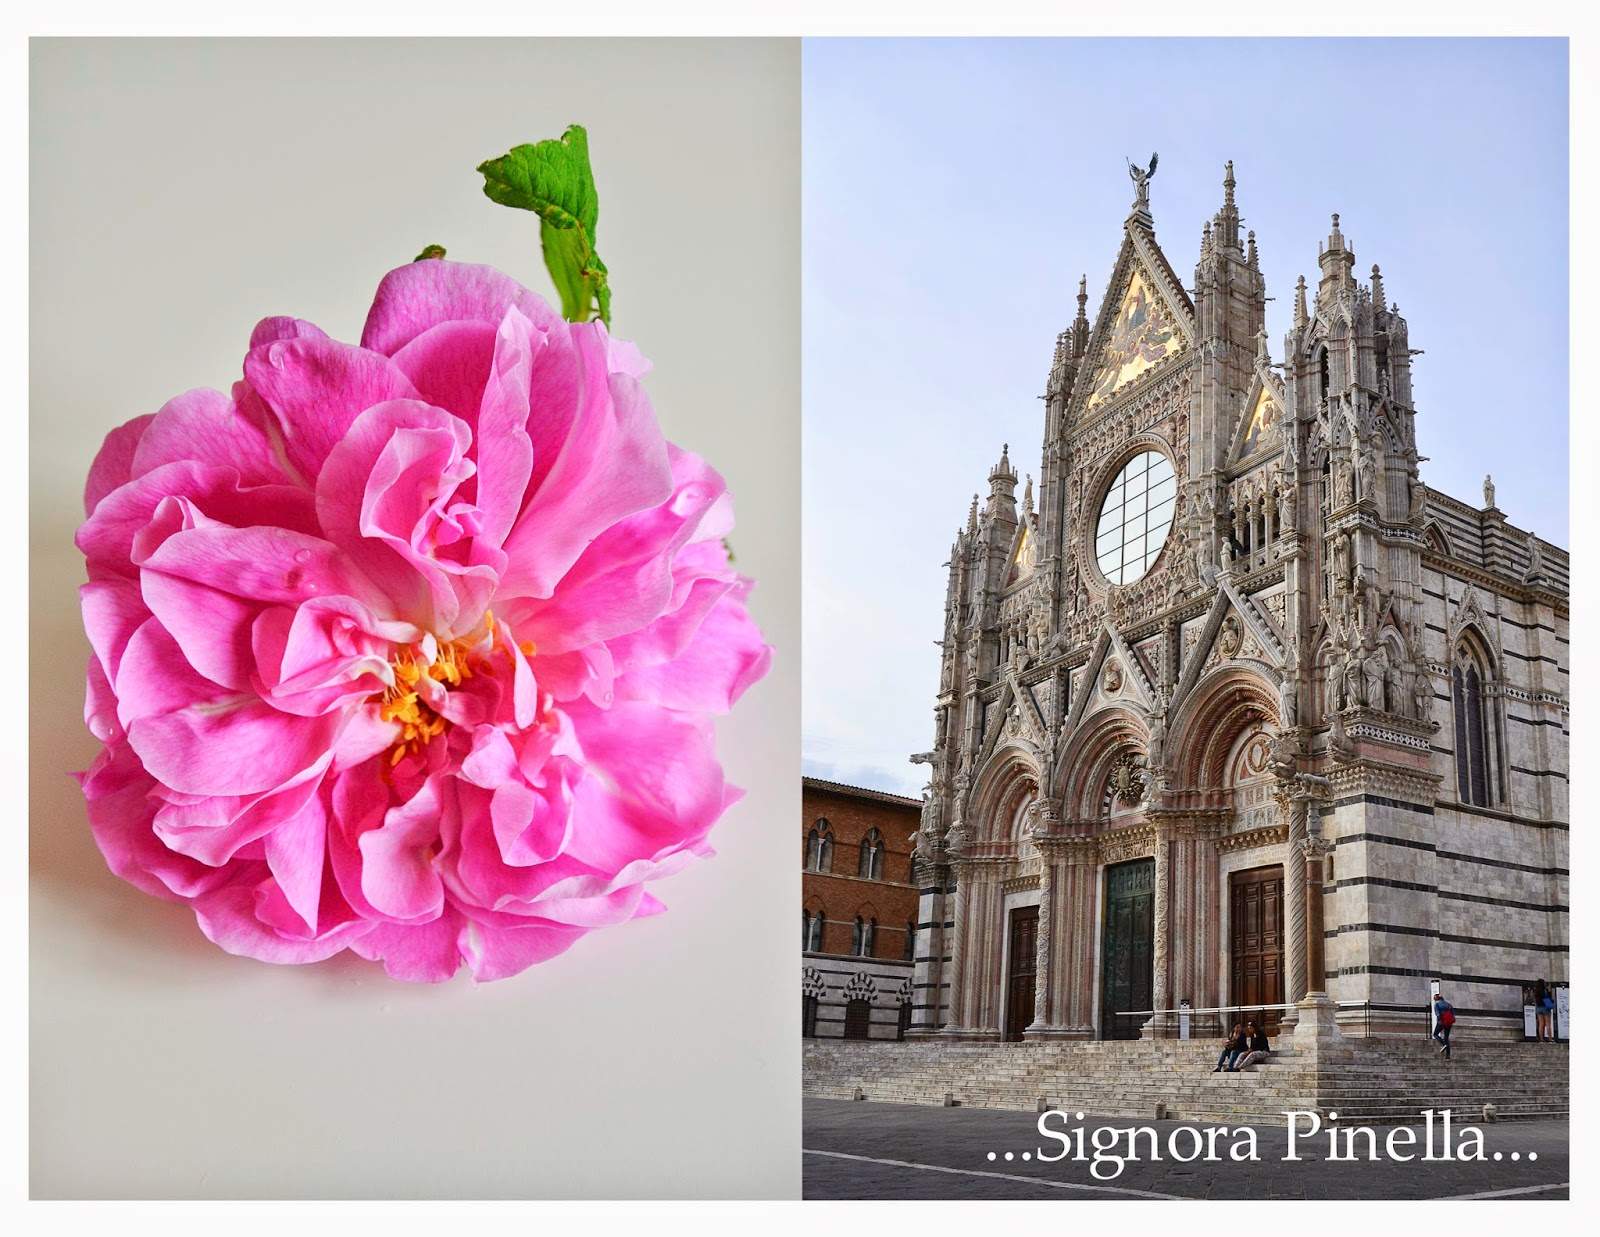 Rosa Gefühle in Siena… (Jun 12, 2014)